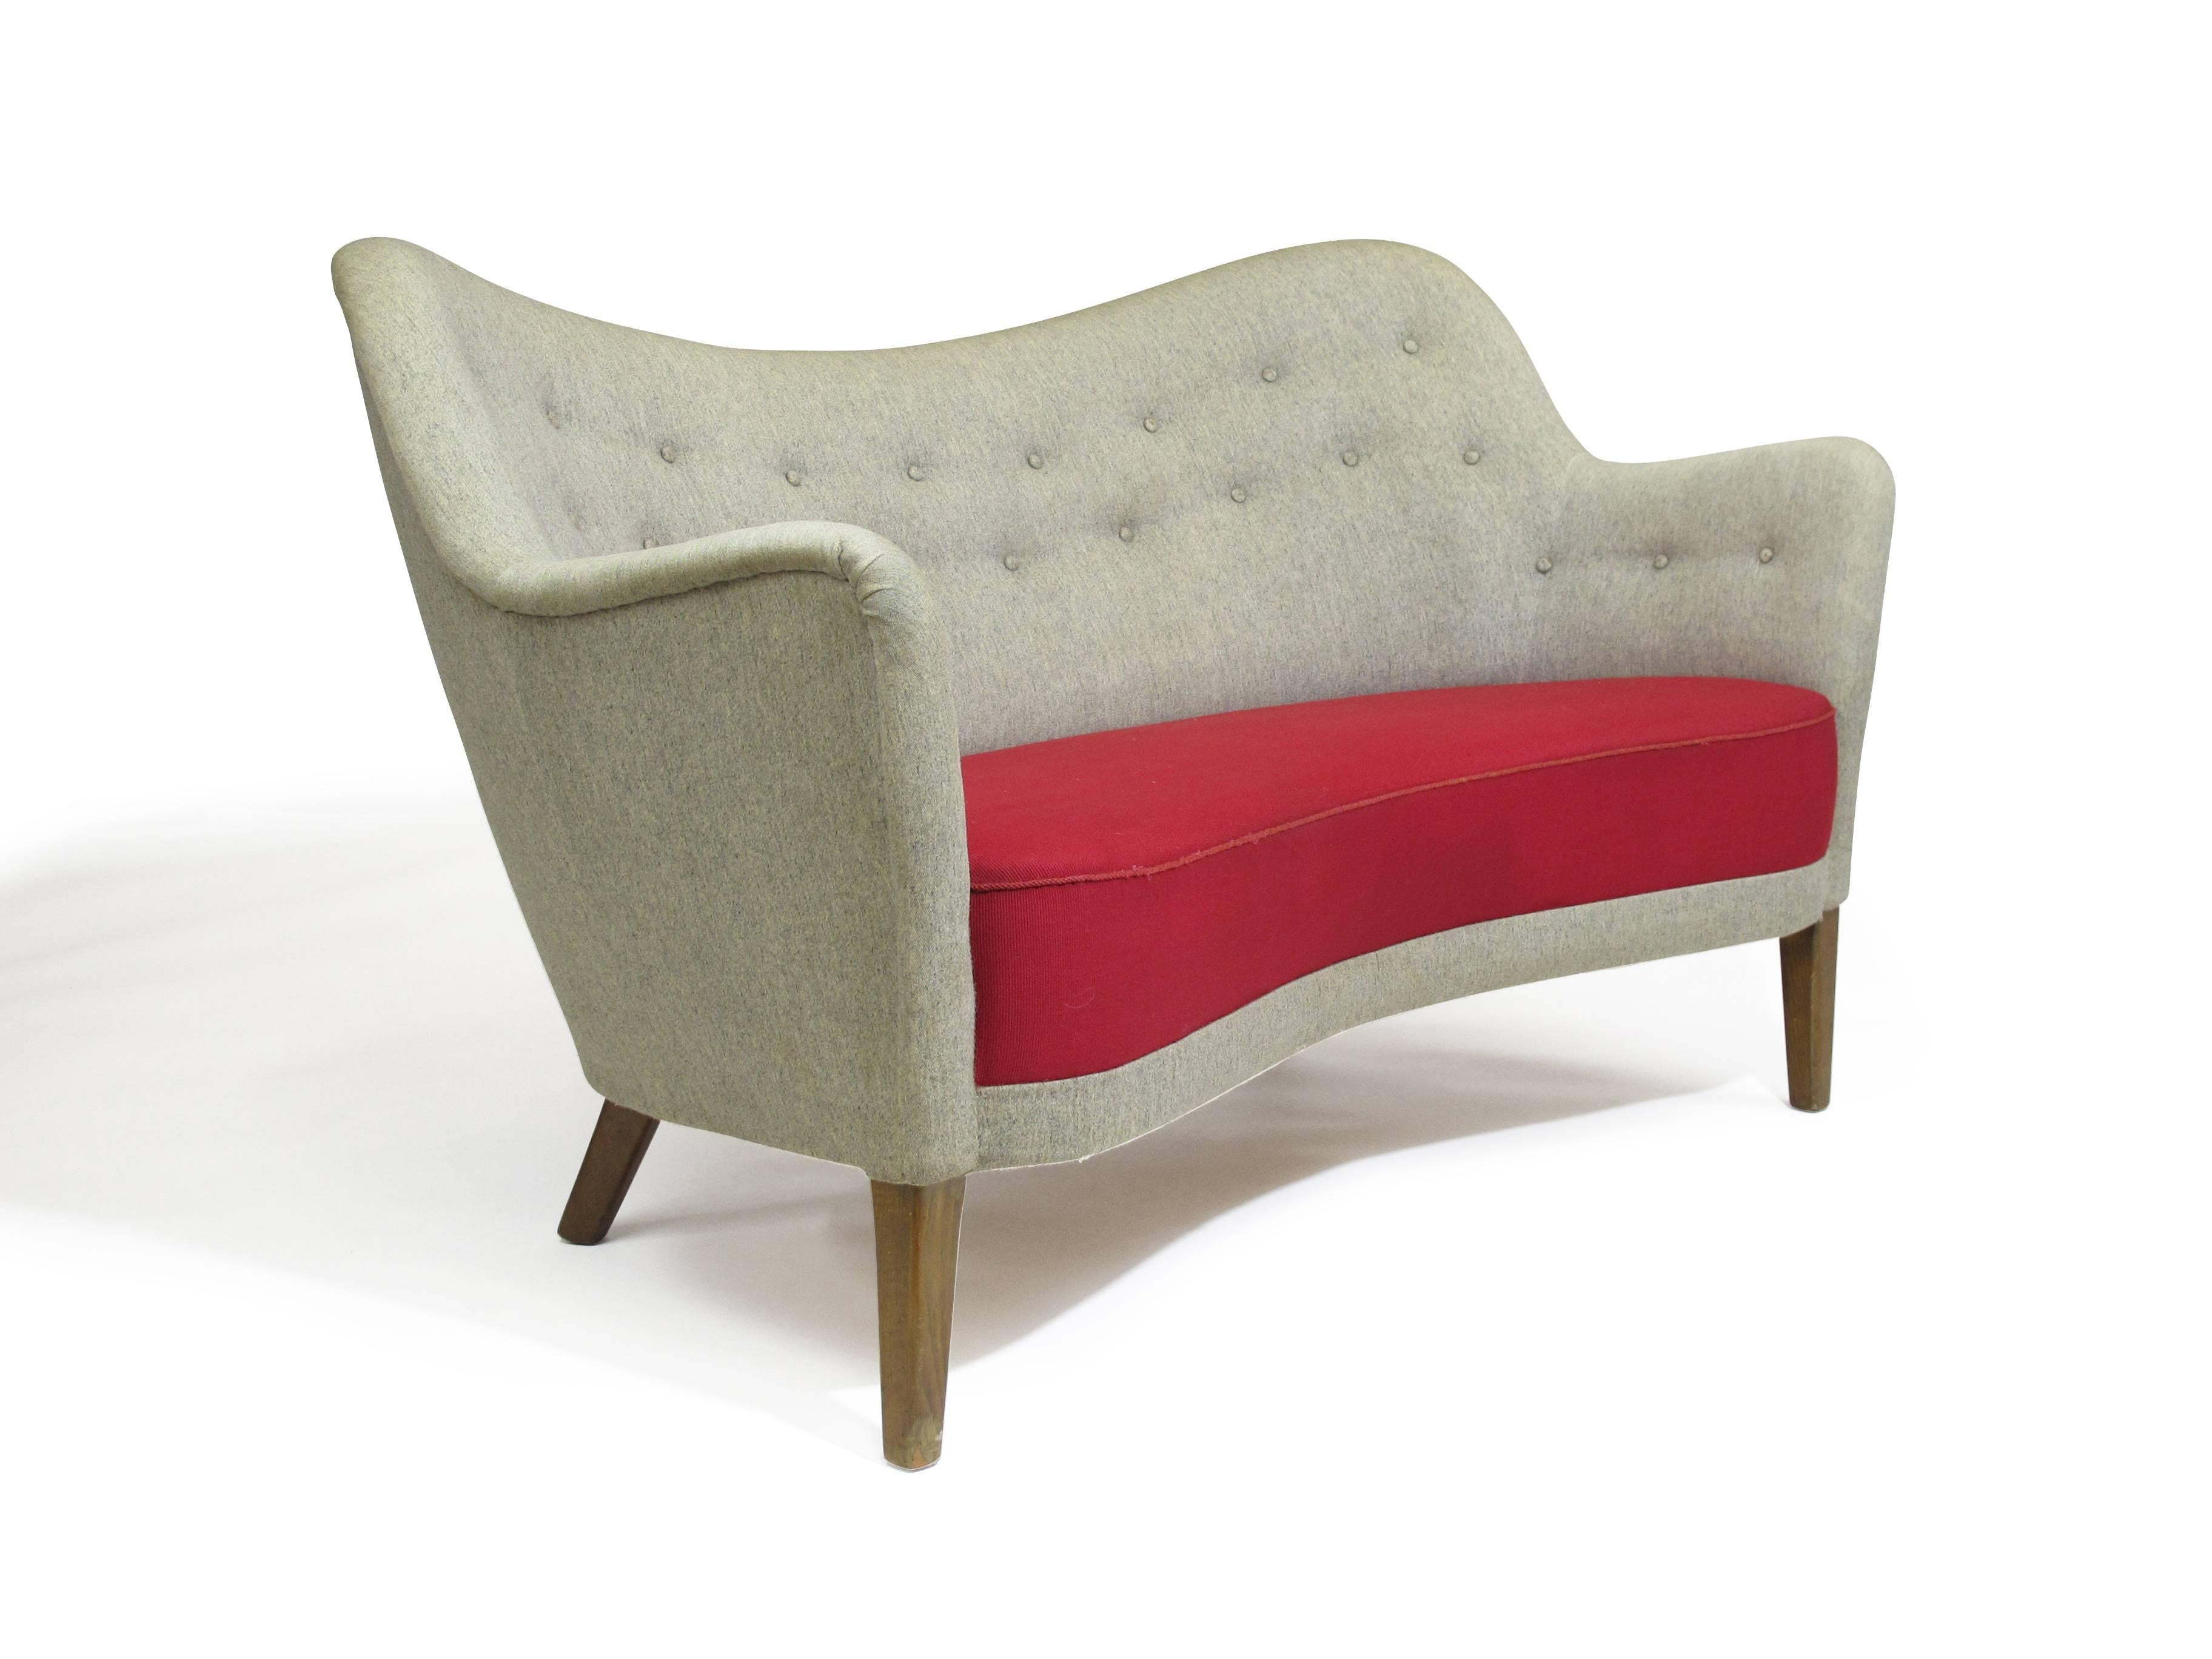 Dänisches Loveseat-Sofa in der Art Finn Juhls BO-55 von Carl Brorup. 
Original Wollstoff in gutem Zustand.